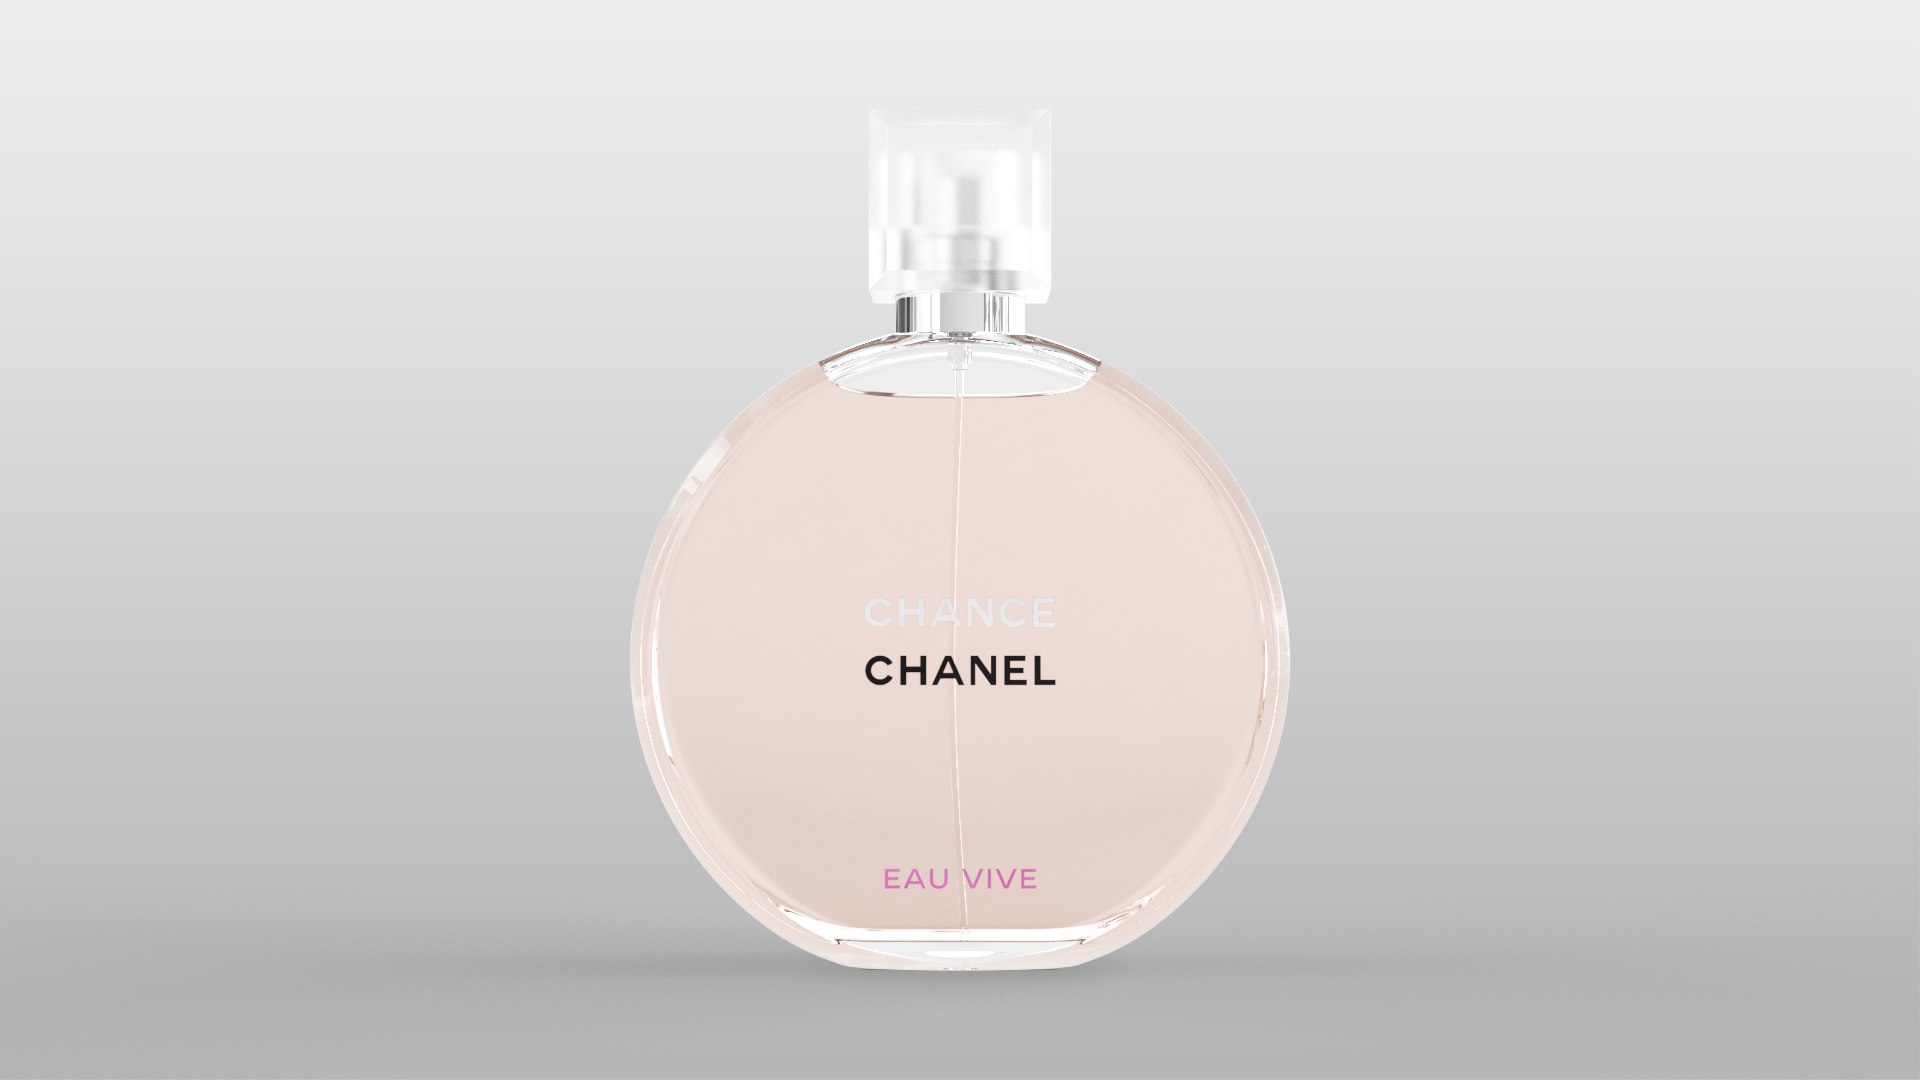 Chanel chance eau vive 3D model - TurboSquid 1480481